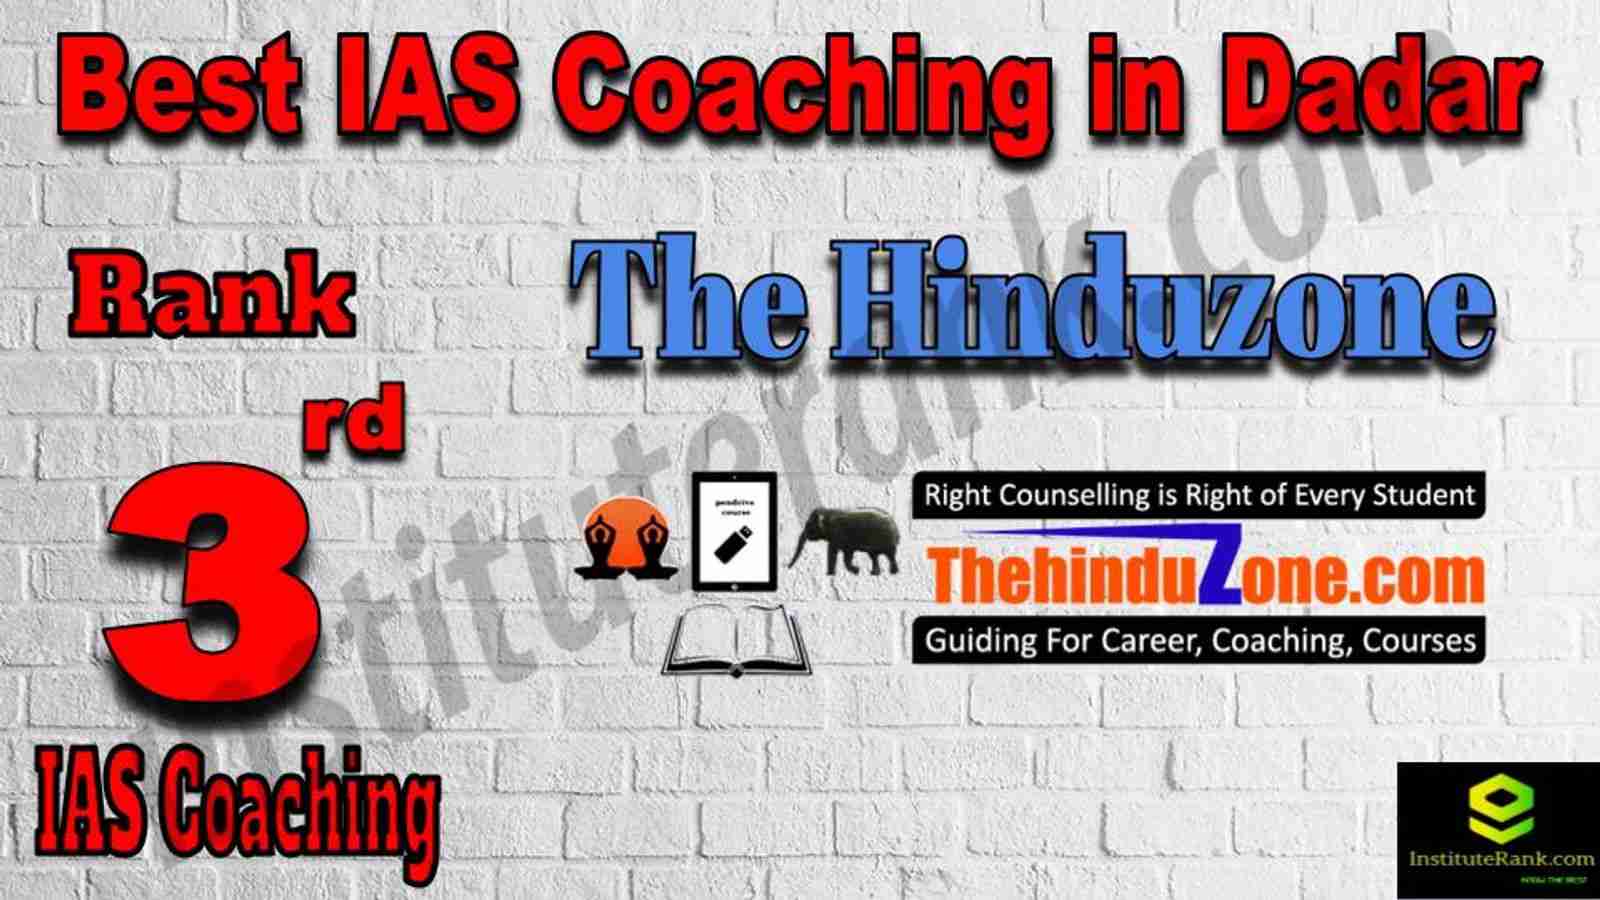 3rd Best IAS Coaching in Dadar